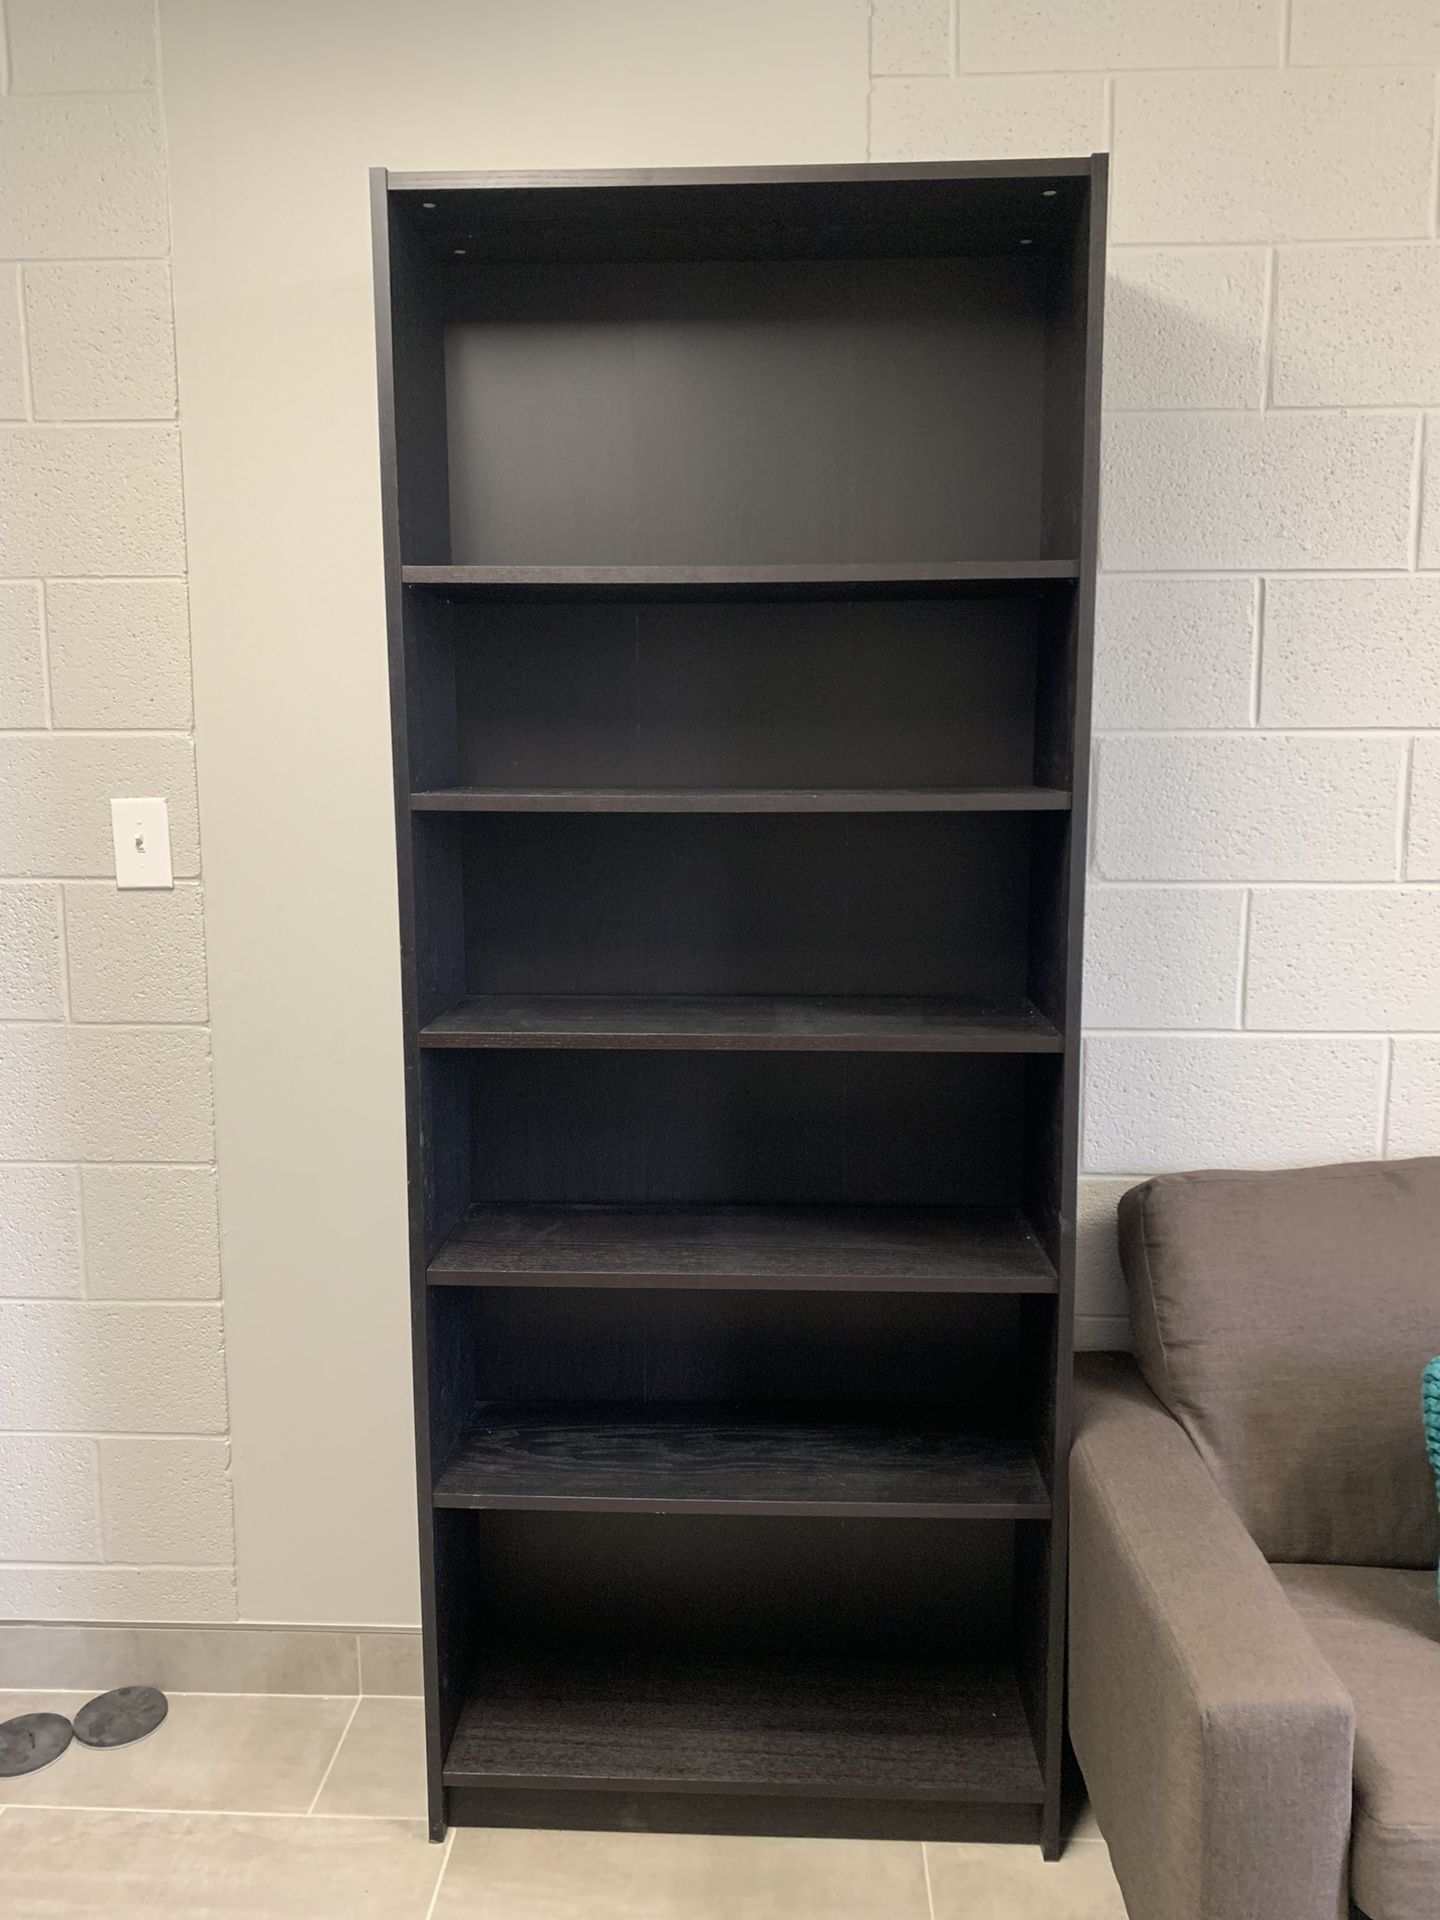 Adjustable Bookshelves $50